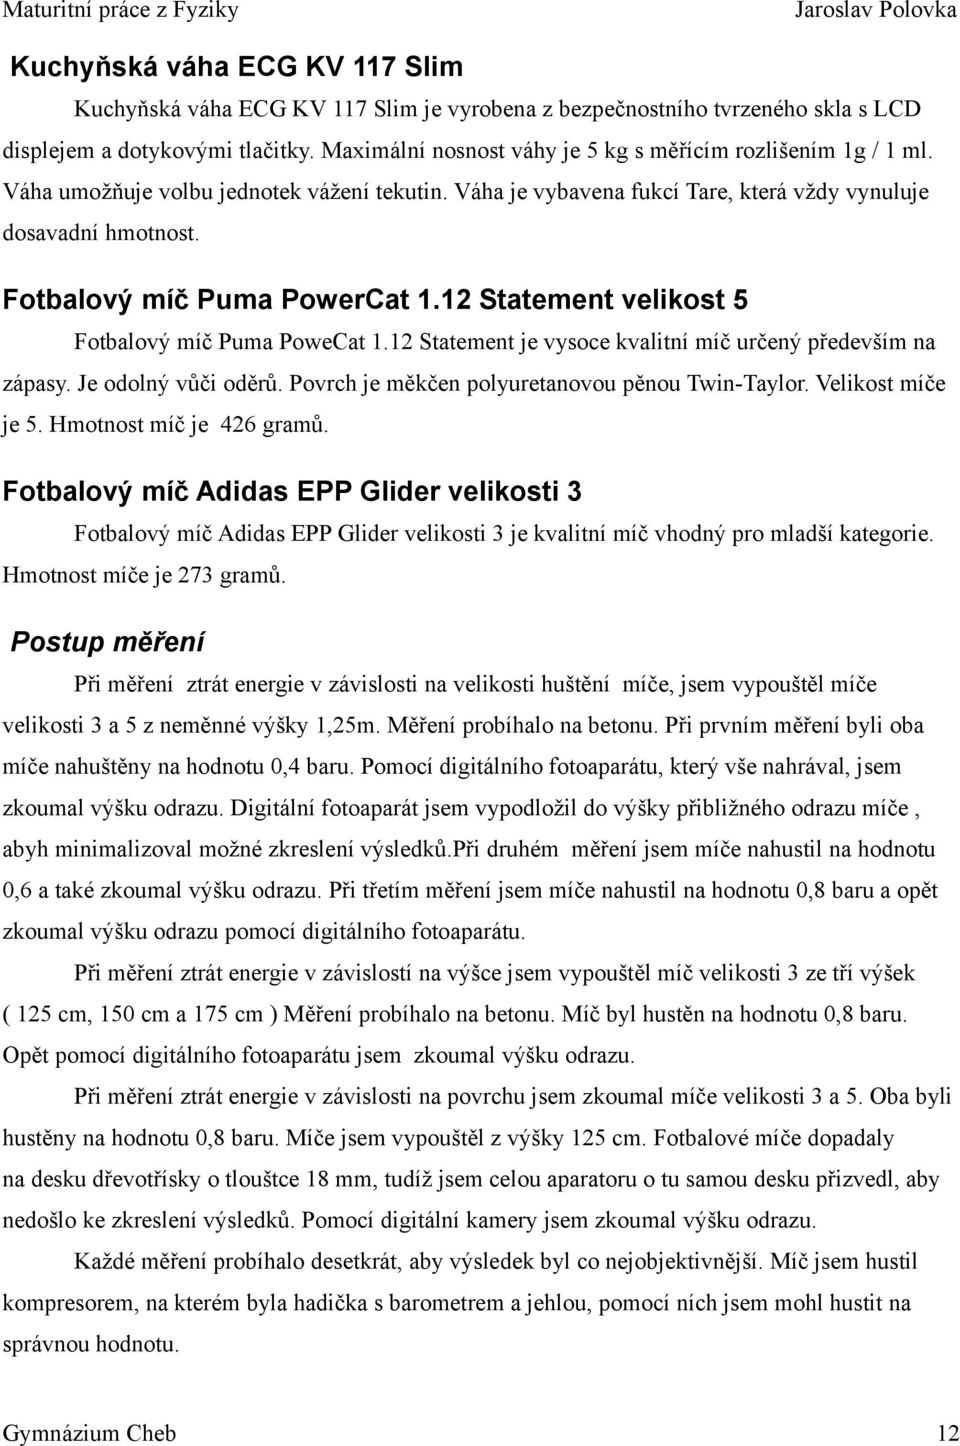 Fotbalový míč Puma PowerCat 1.12 Statement velikost 5 Fotbalový míč Puma PoweCat 1.12 Statement je vysoce kvalitní míč určený především na zápasy. Je odolný vůči oděrů.